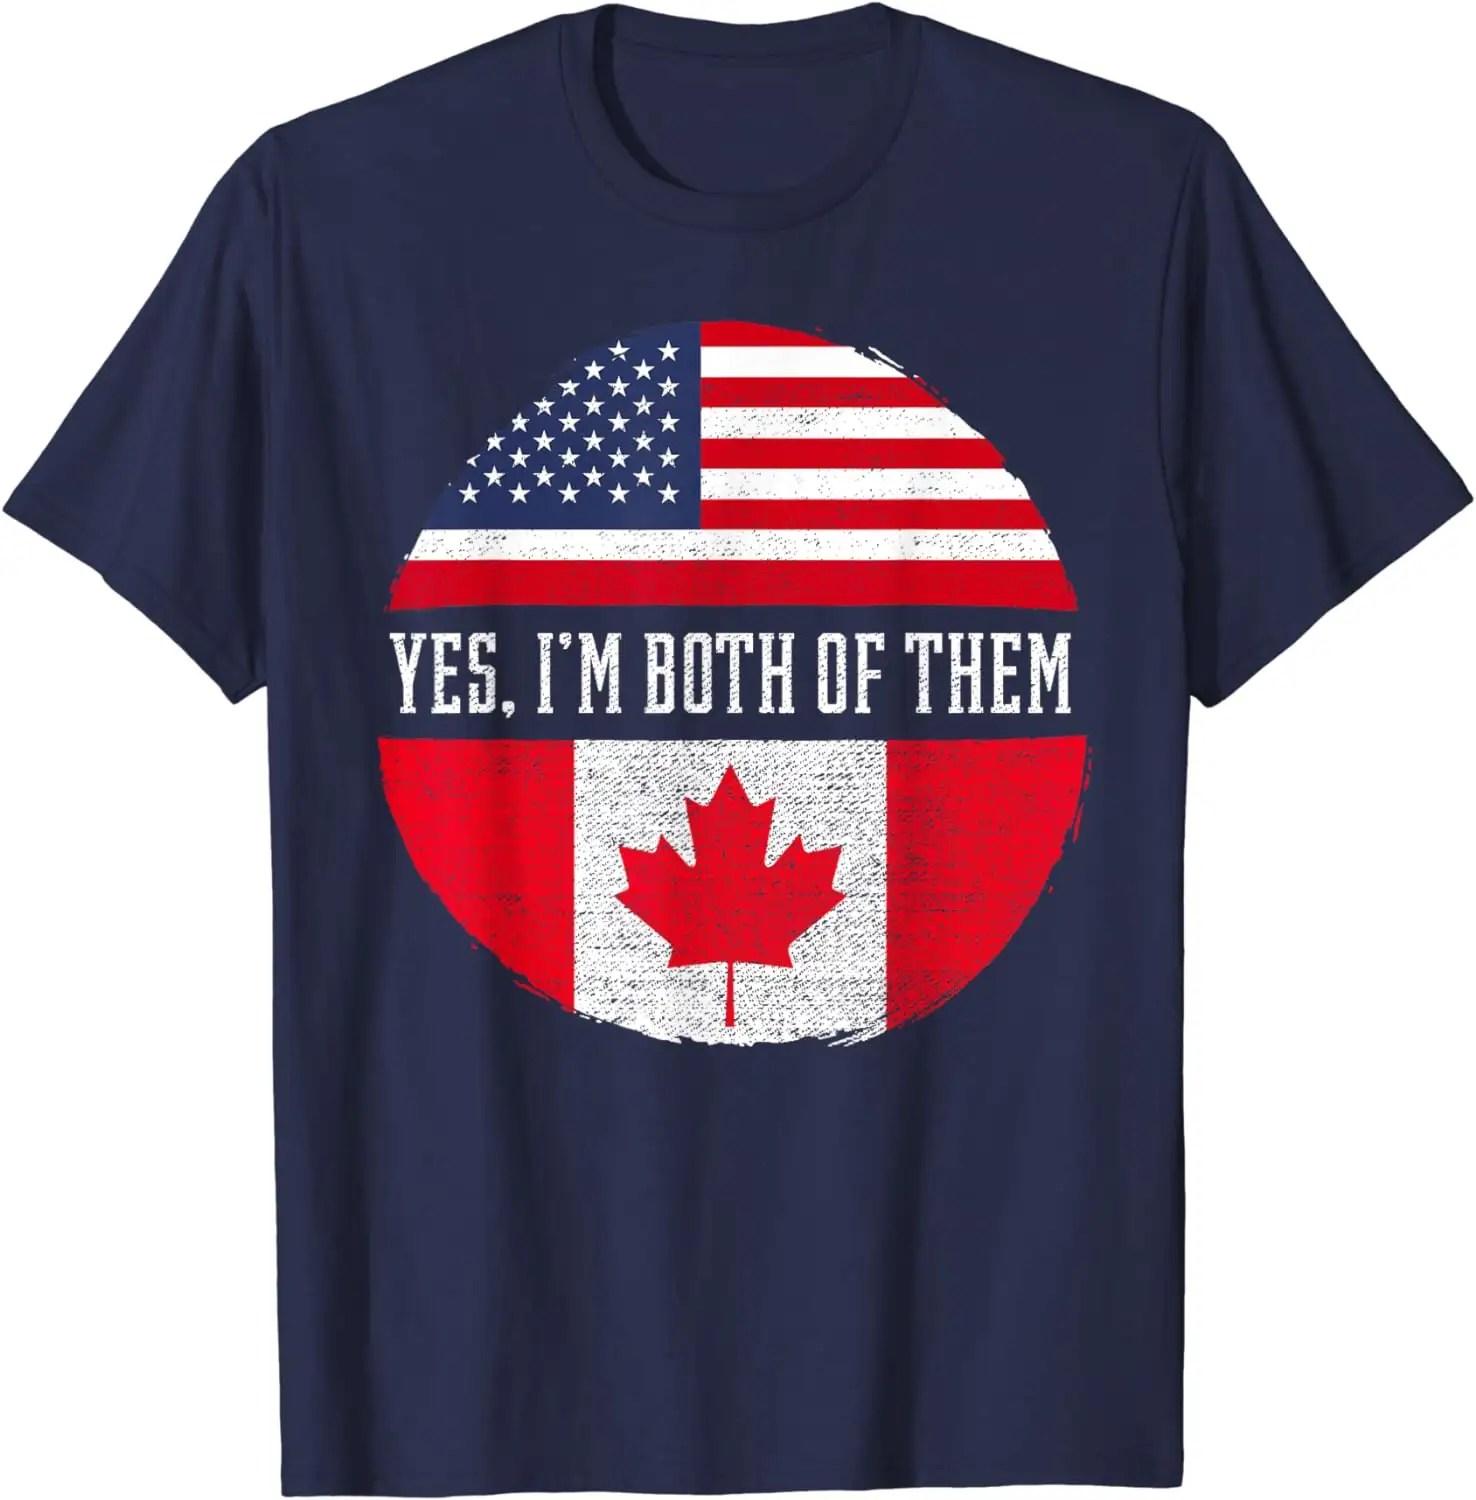 फिटस्पी हाँ, मैं उन दोनों पर गर्व करता हूं यूएसए अमेरिका कनाडा ध्वज उपहार टी-शर्ट थोक